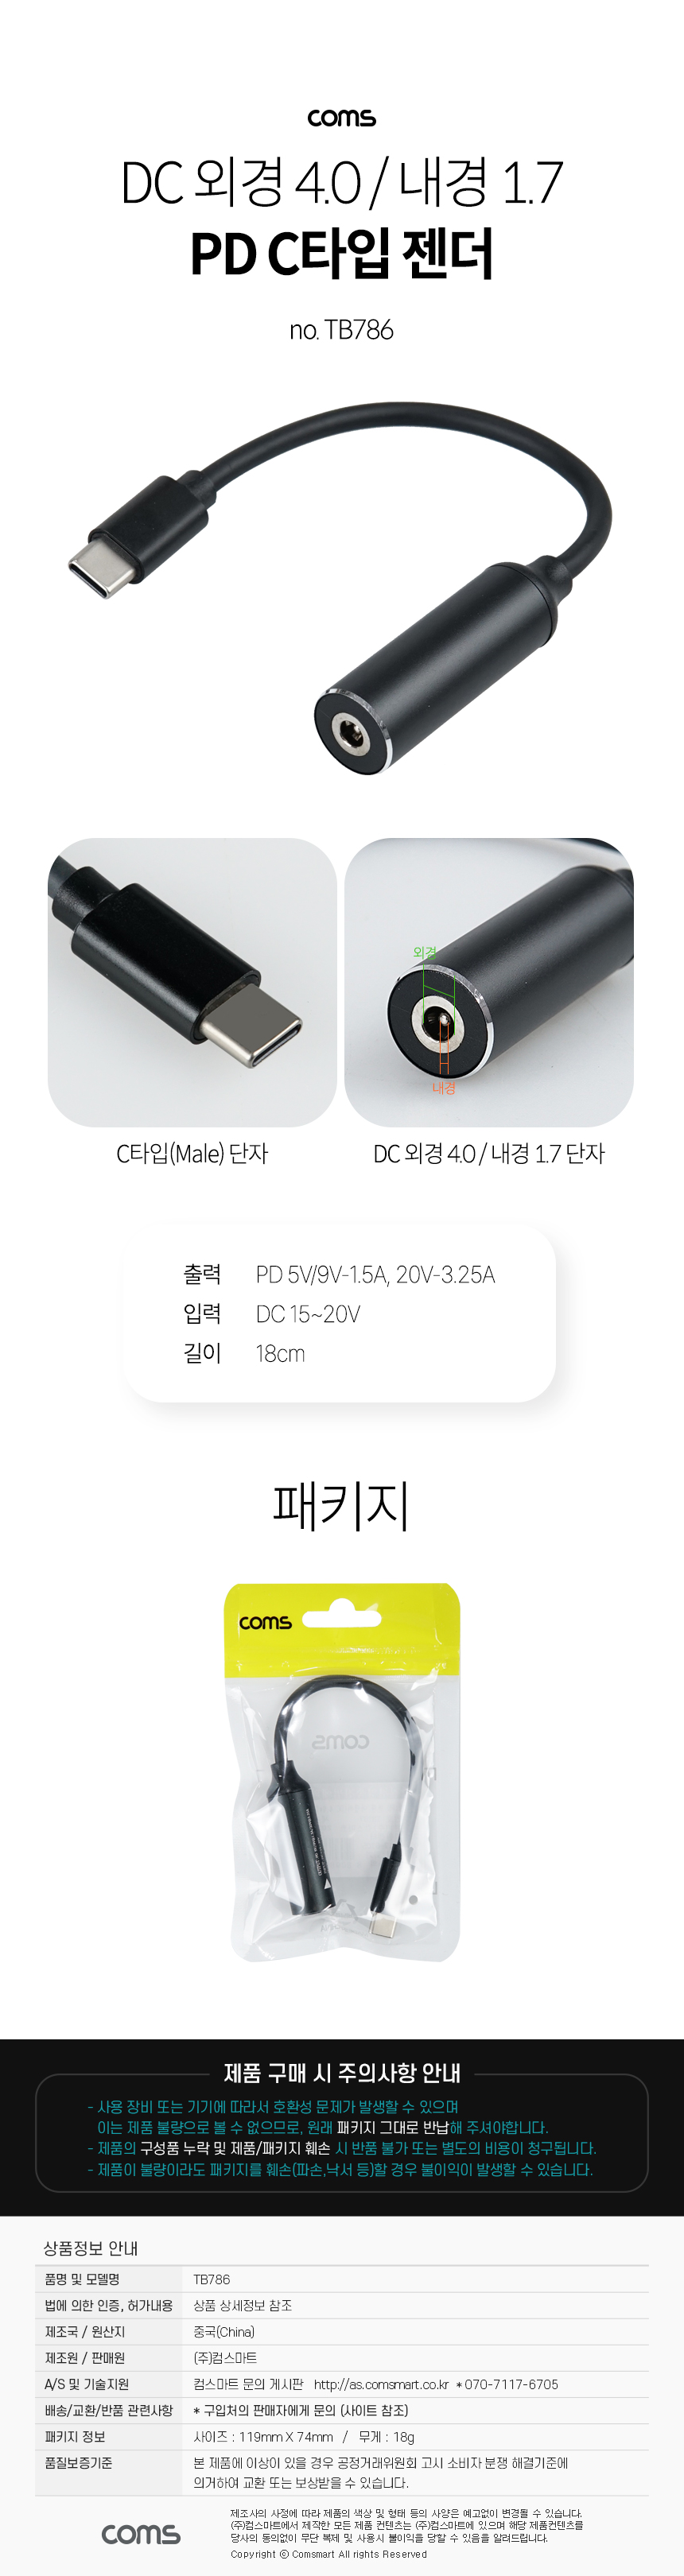 USB Type C PD 노트북 전원 변환 충전 케이블 DC 외경 4.0 내경 1.7 C타입 18cm